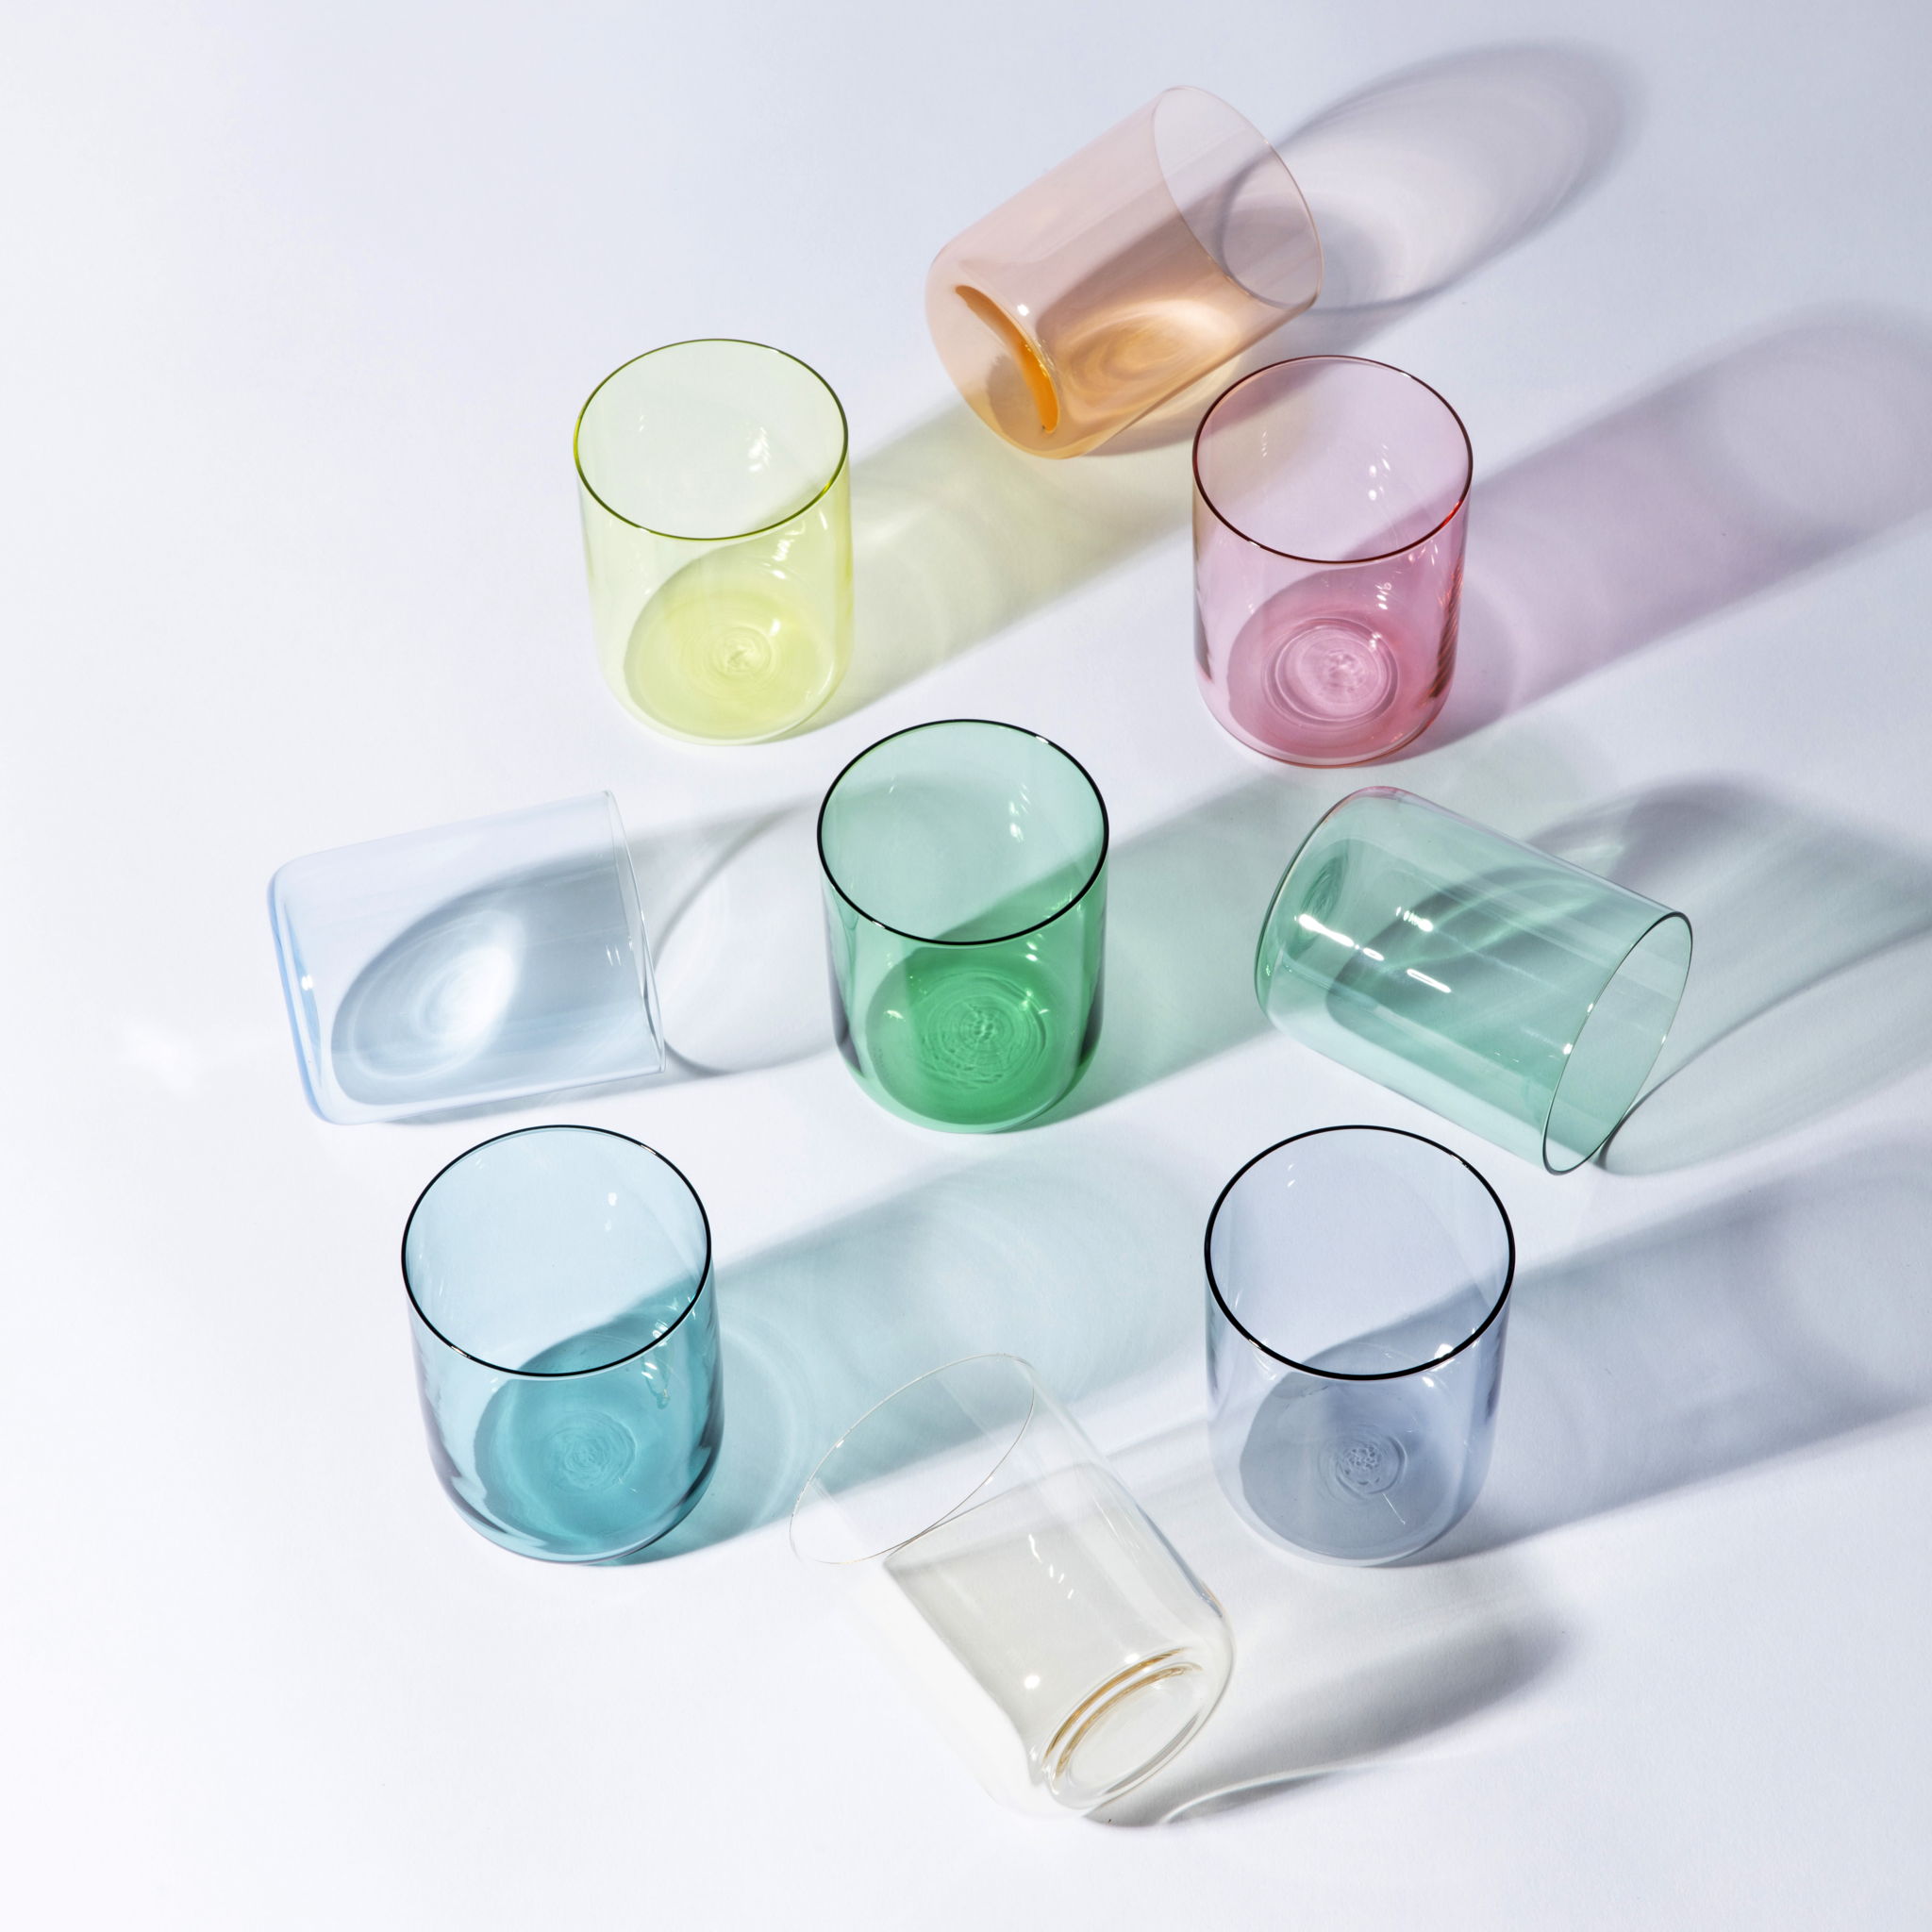 Saison des verres ‘multicolour’ is een set van 9 speelse glazen in verschillende, vrolijke kleuren.